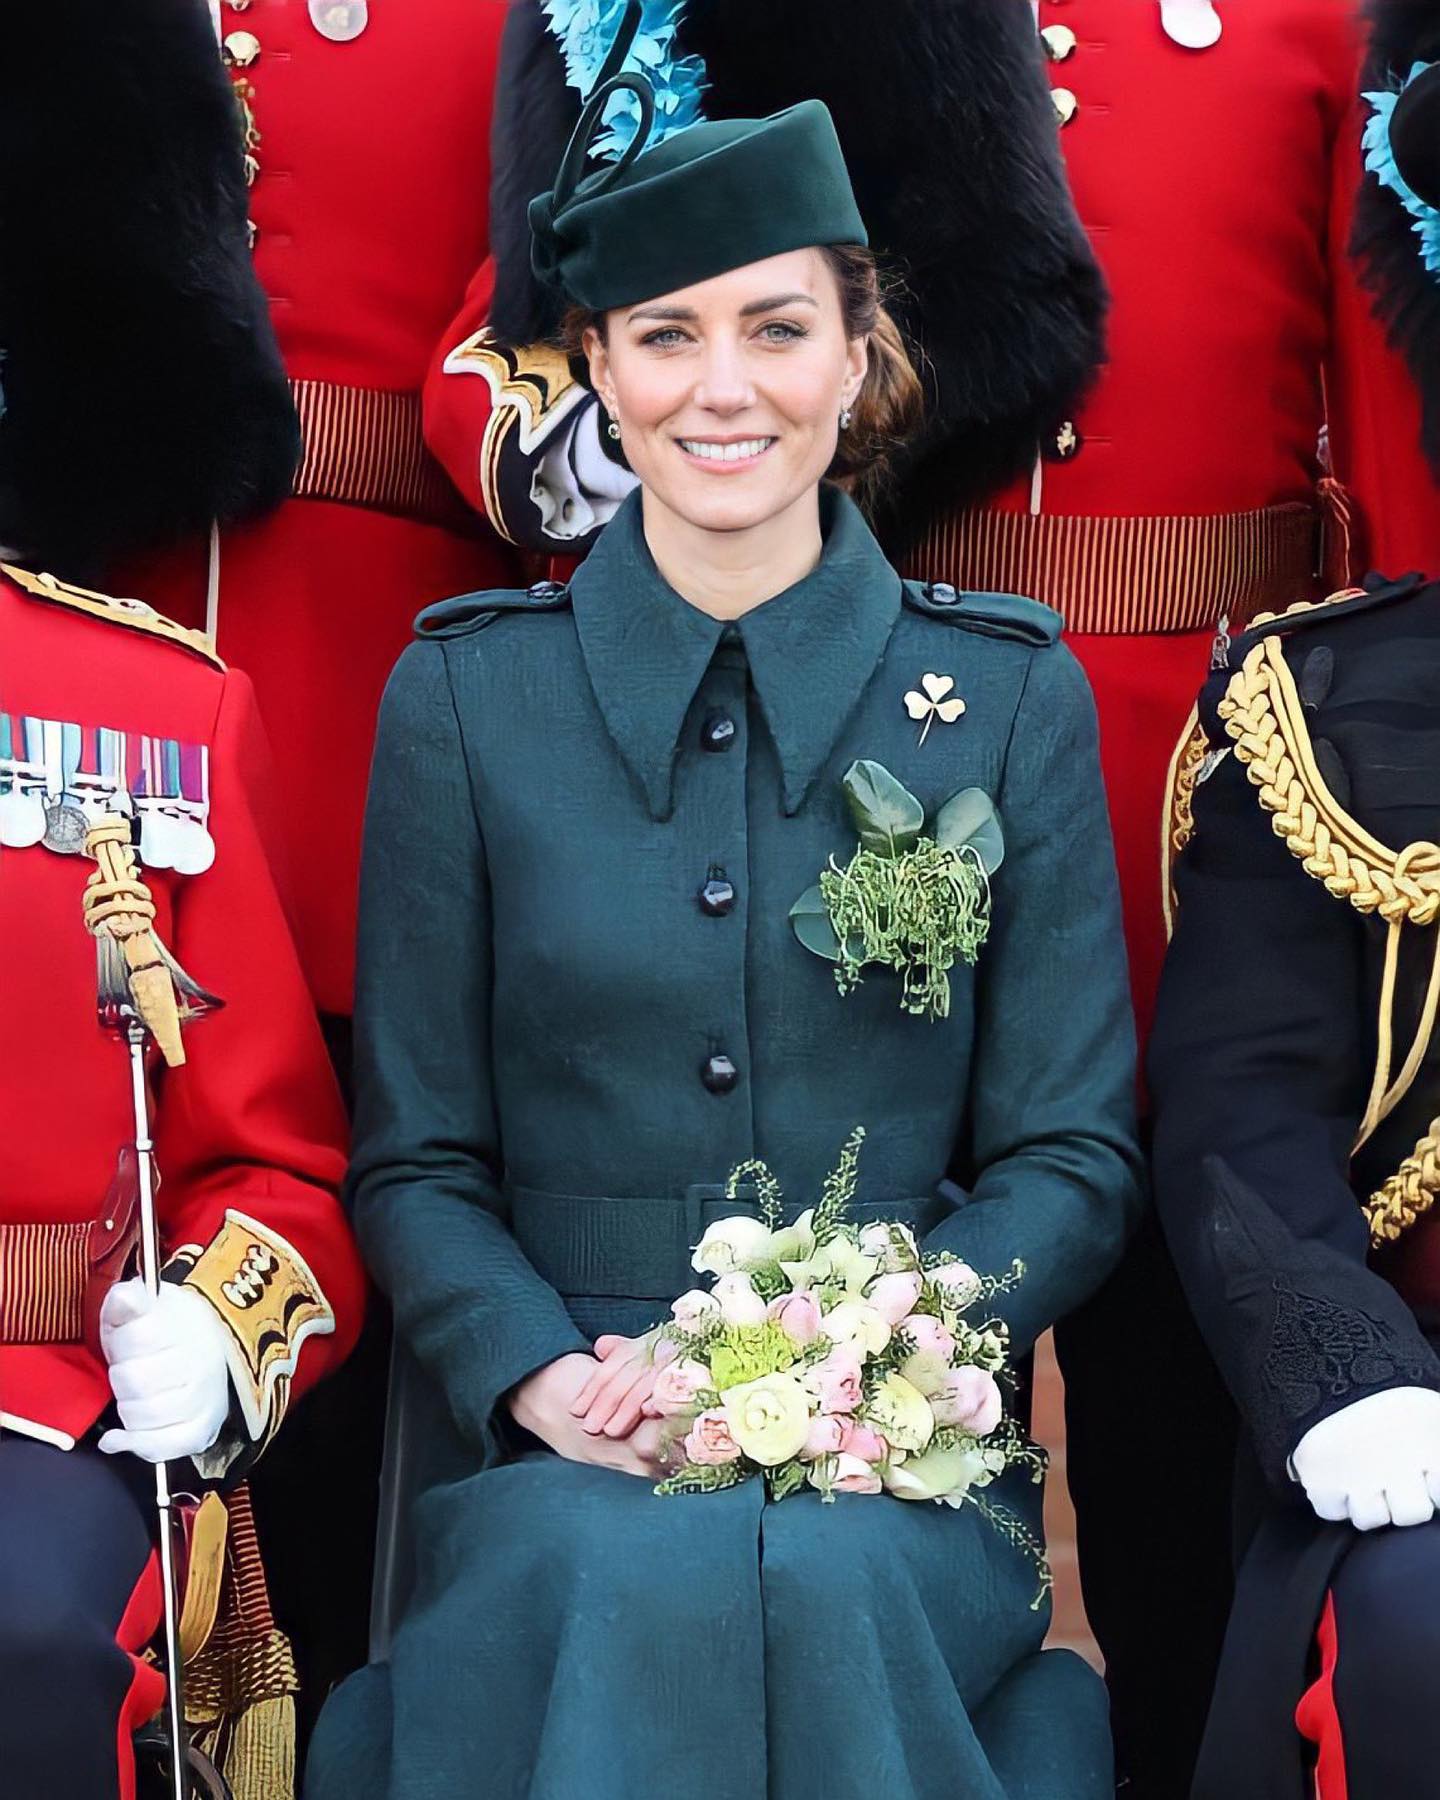 Кейт Миддлтон в пальто в военном стиле отметила День святого Патрика